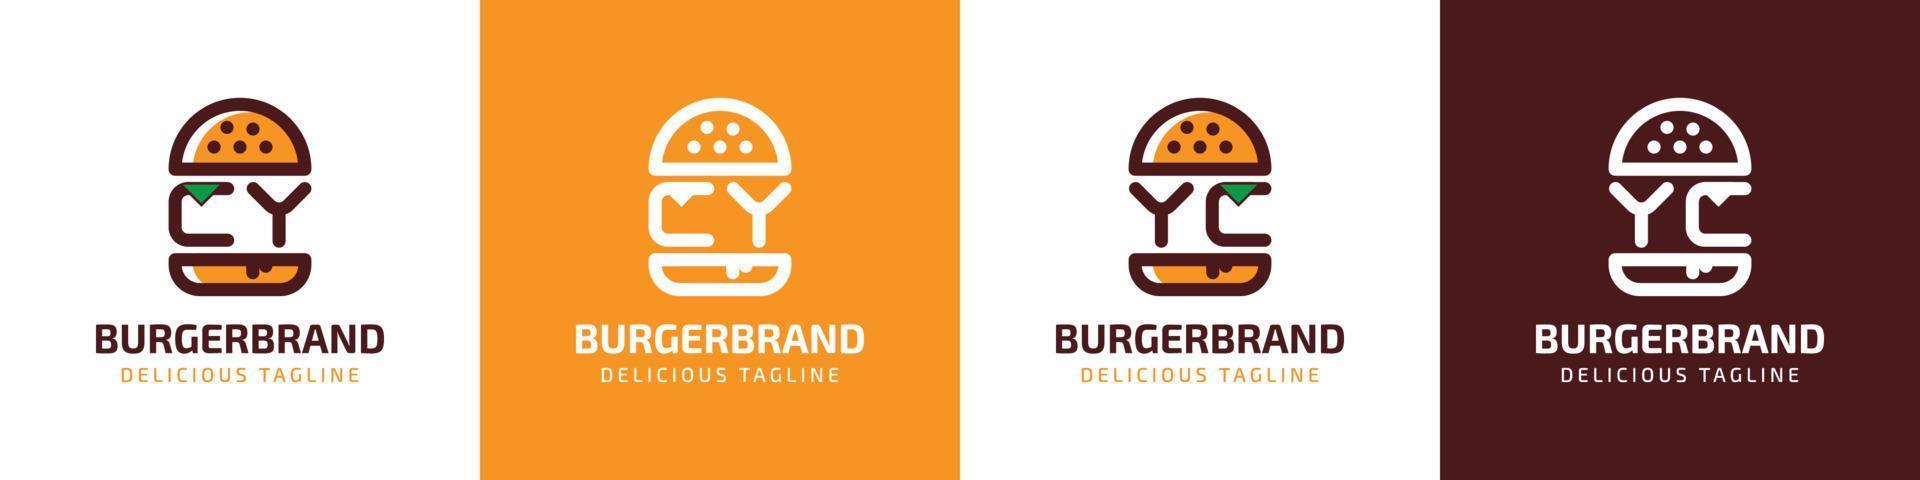 letra cy y yc hamburguesa logo, adecuado para ninguna negocio relacionado a hamburguesa con cy o yc iniciales. vector